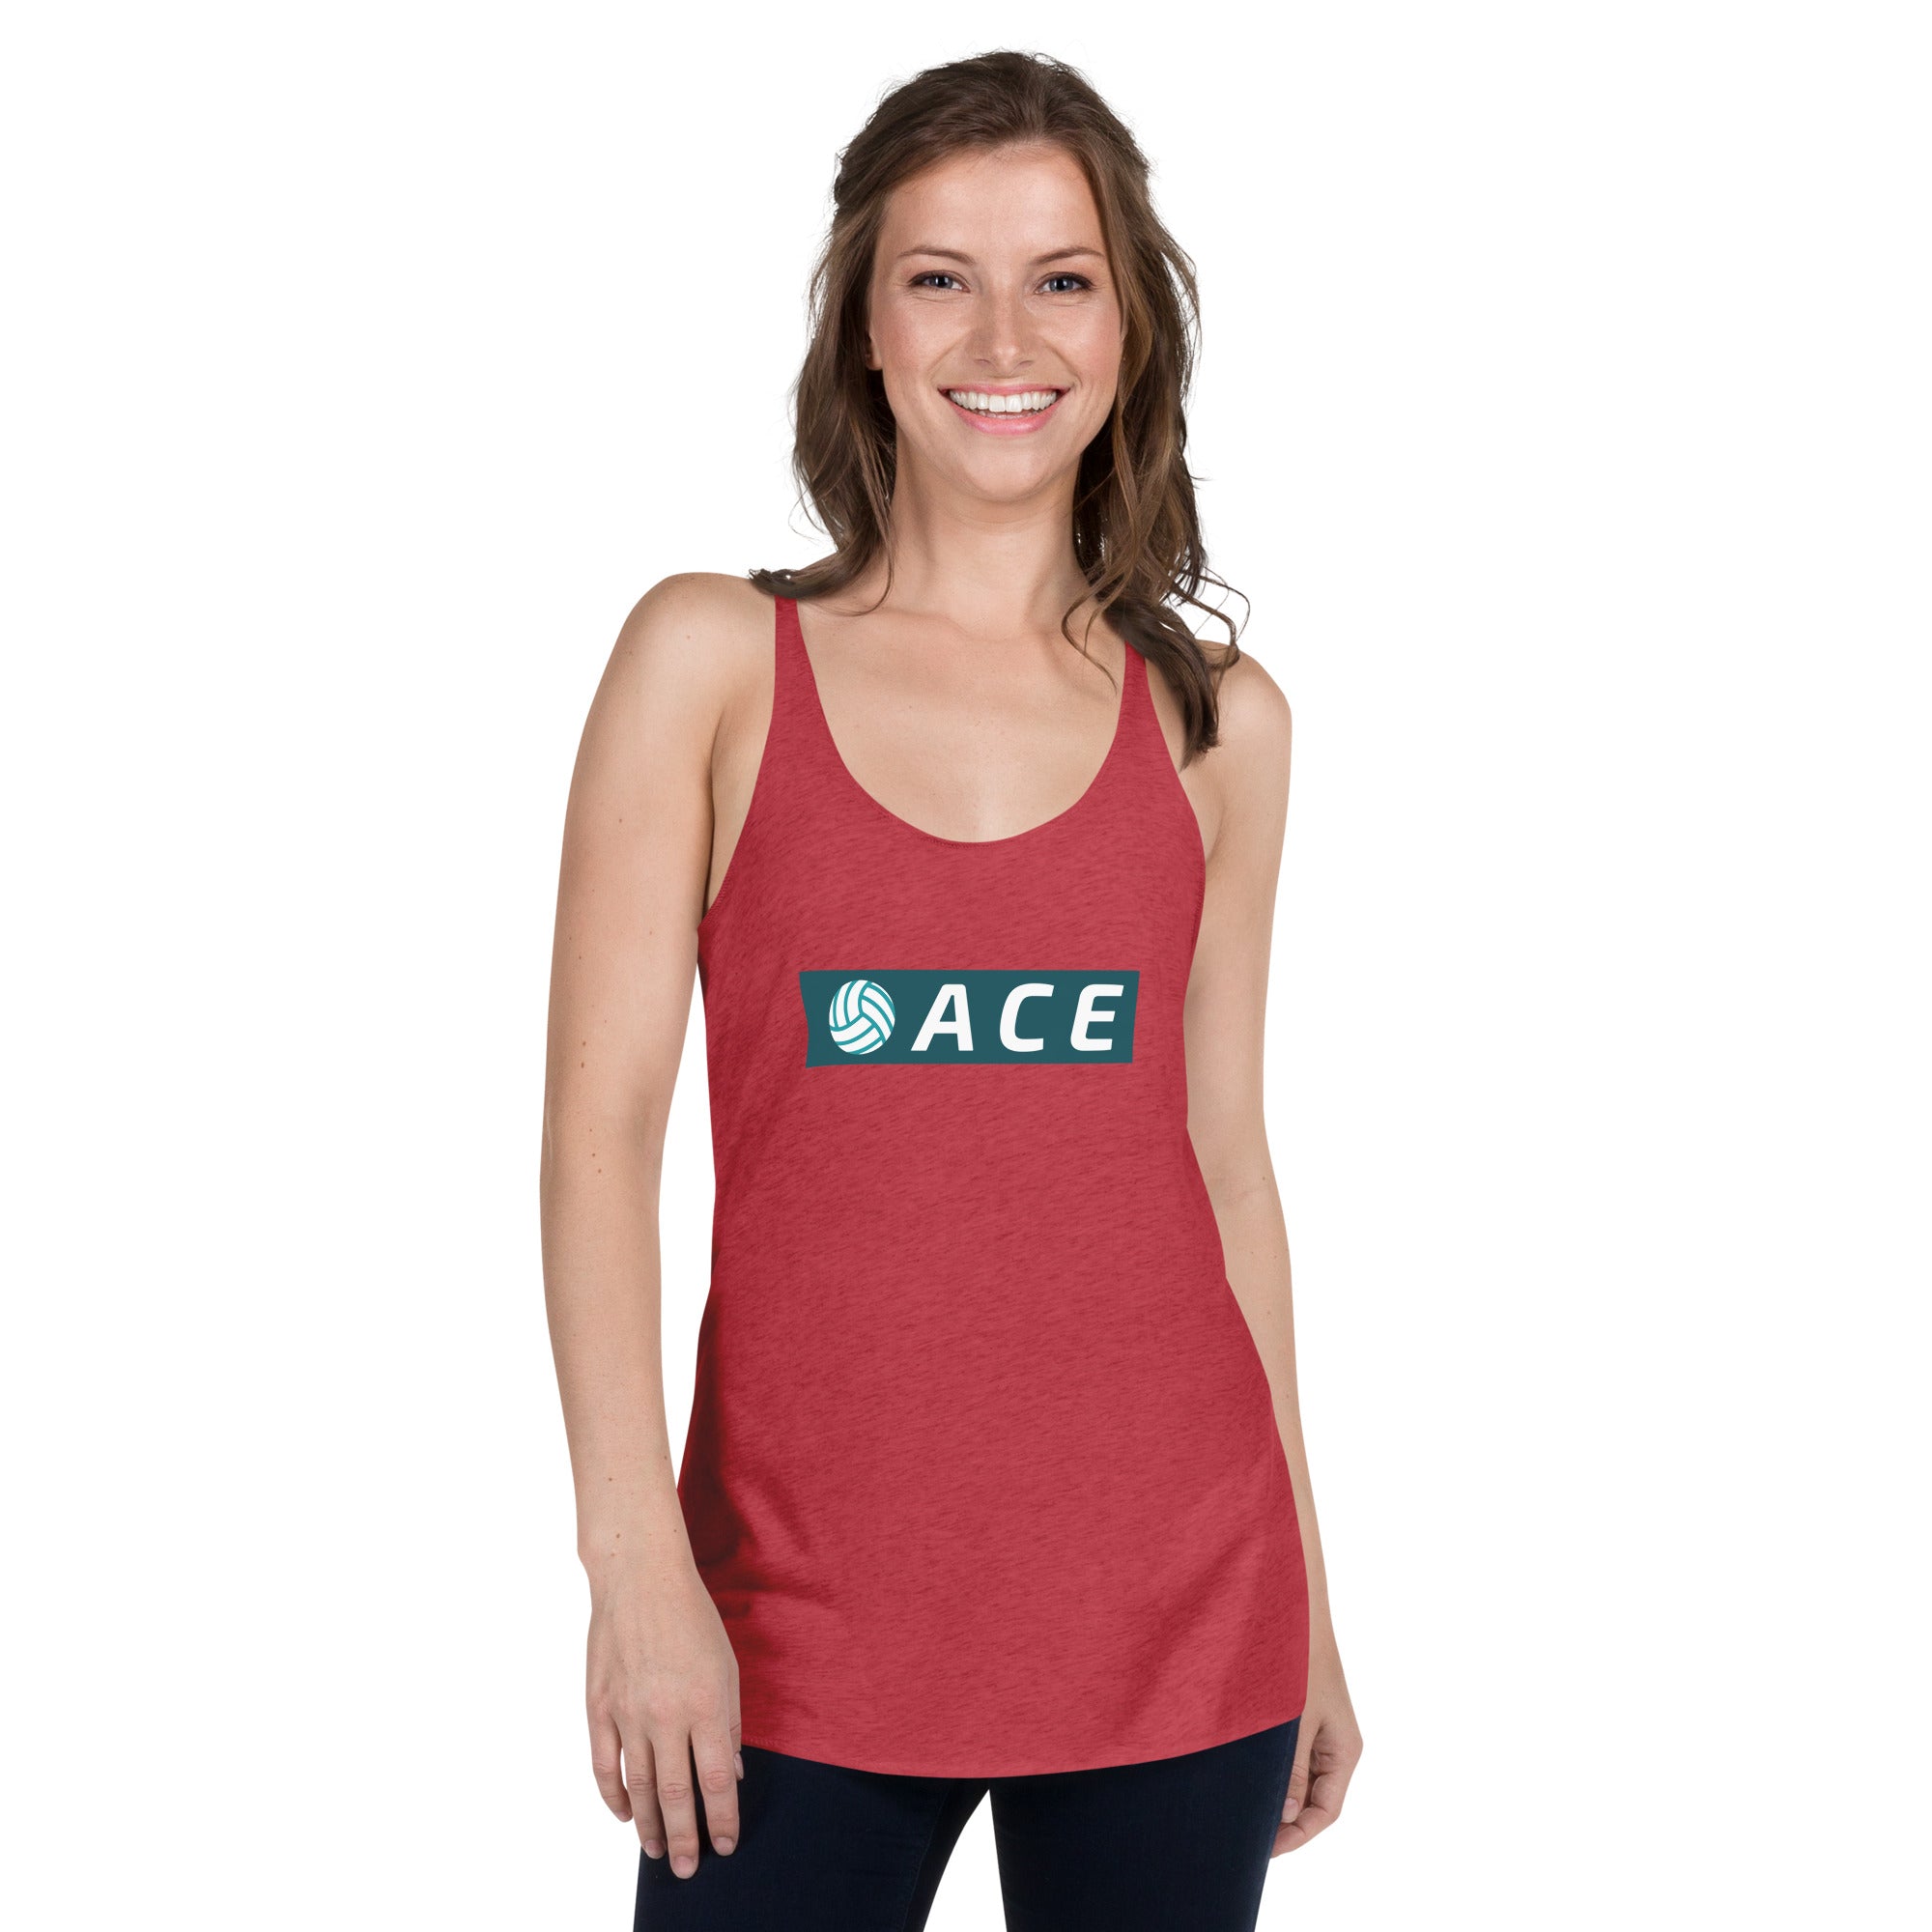 Ace Women's Racerback Tank